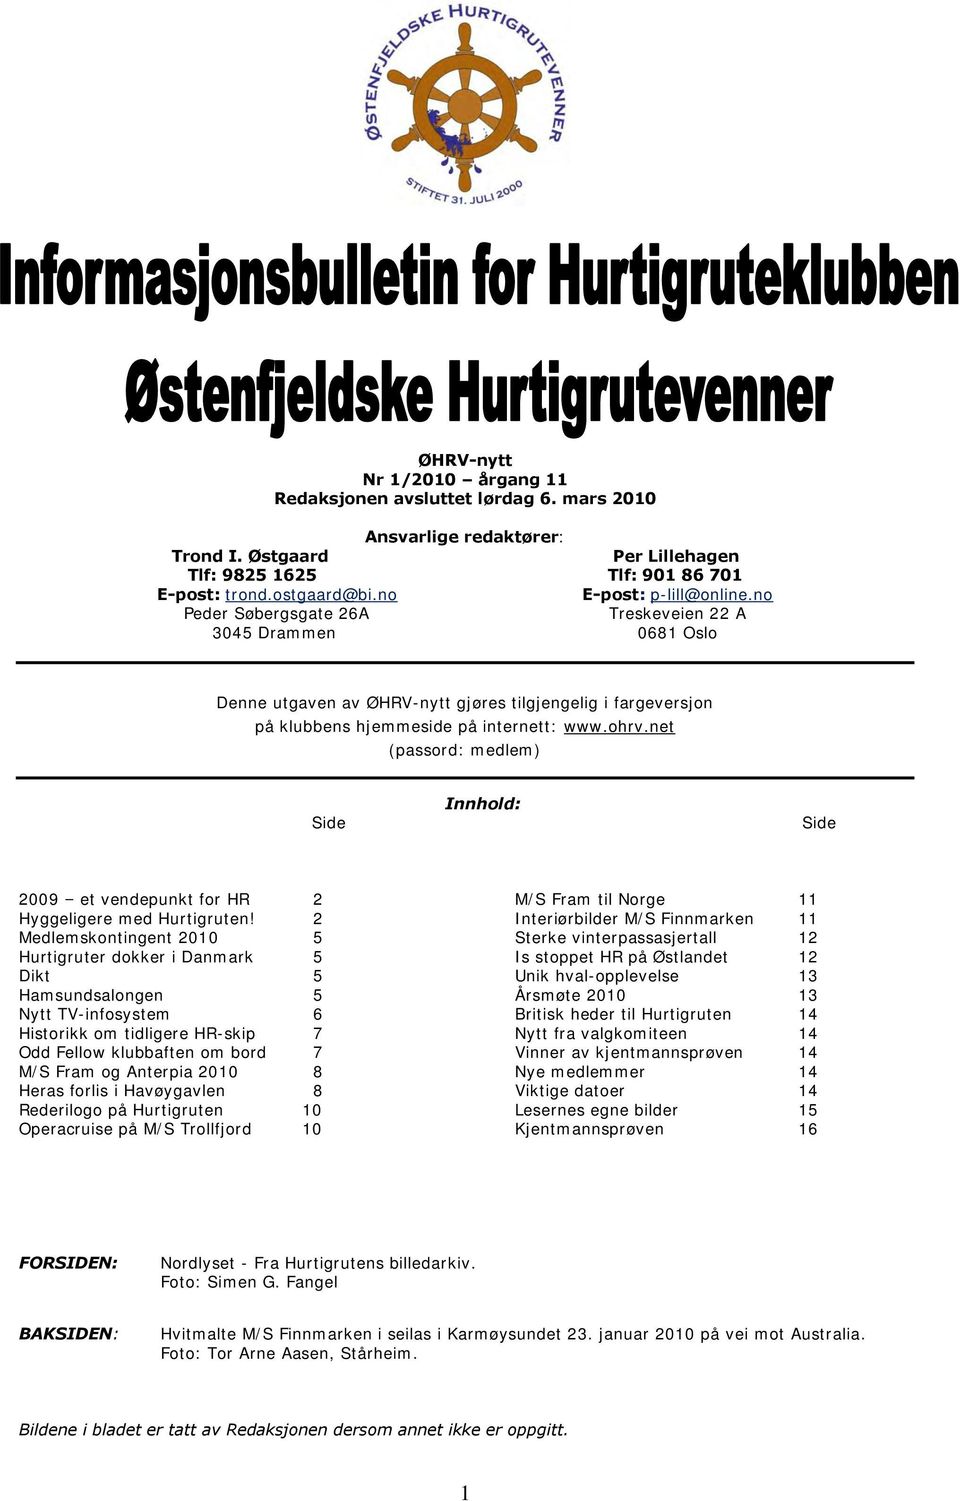 net (passord: medlem) Side Innhold: Side 2009 et vendepunkt for HR 2 M/S Fram til Norge 11 Hyggeligere med Hurtigruten!